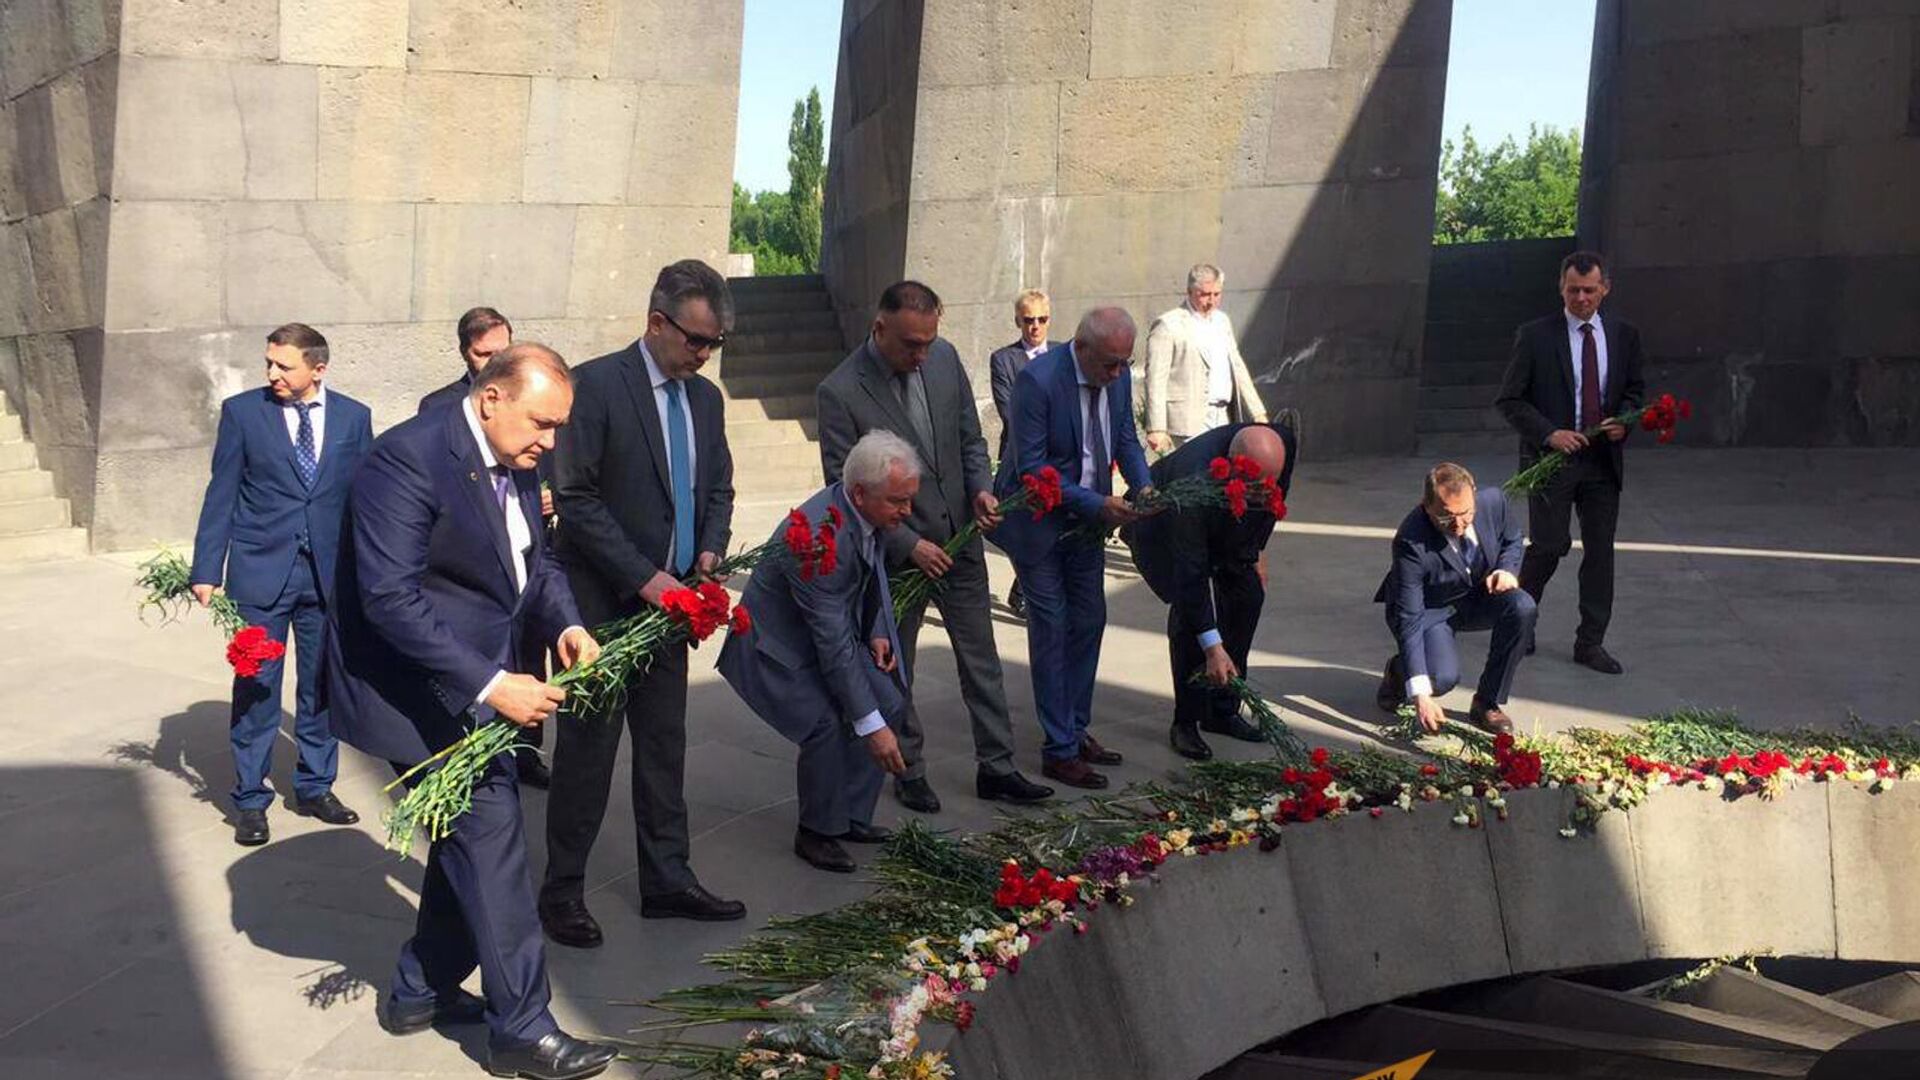 Швыдкой и Маслов в Ереване посетили Цицернакаберд и почтили память жертв Геноцида армян